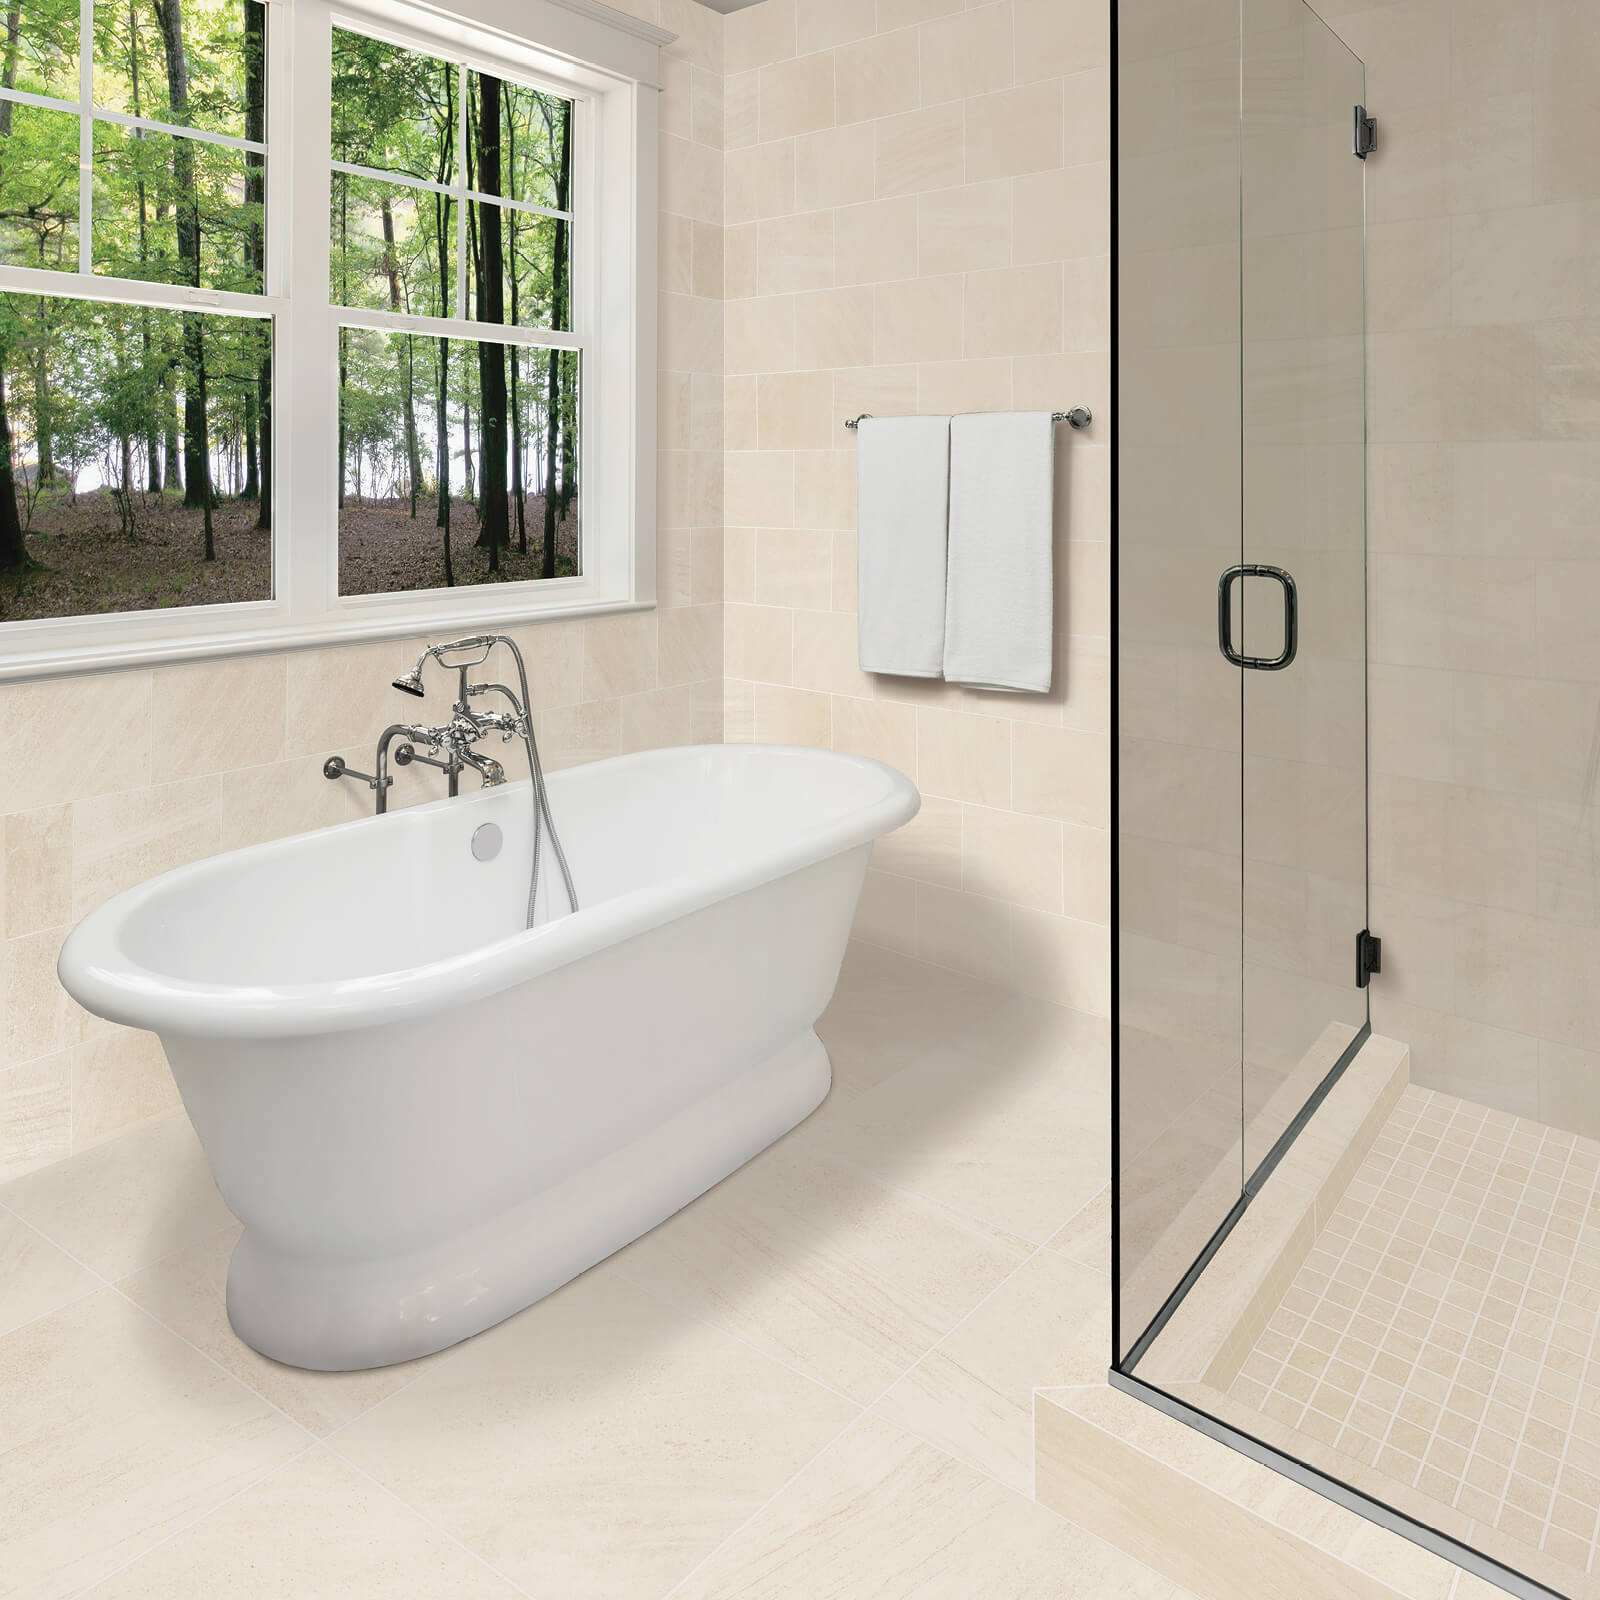 Shower room tiles | Star Flooring & Design